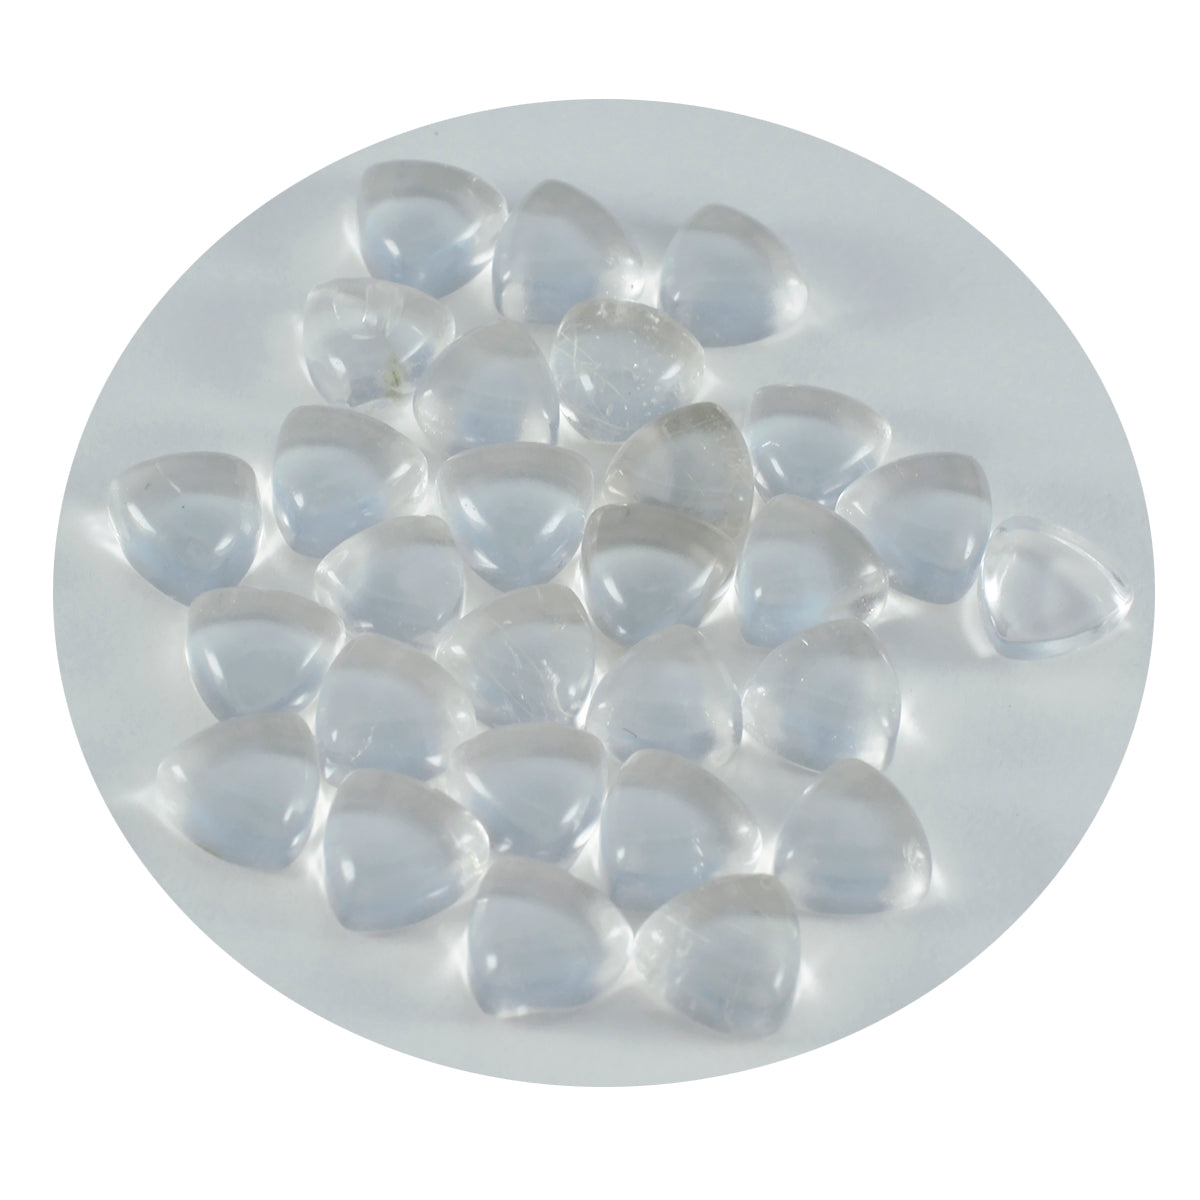 Riyogems, 1 pieza, cabujón de cuarzo de cristal blanco, 10x10mm, forma de trillón, gema suelta de excelente calidad